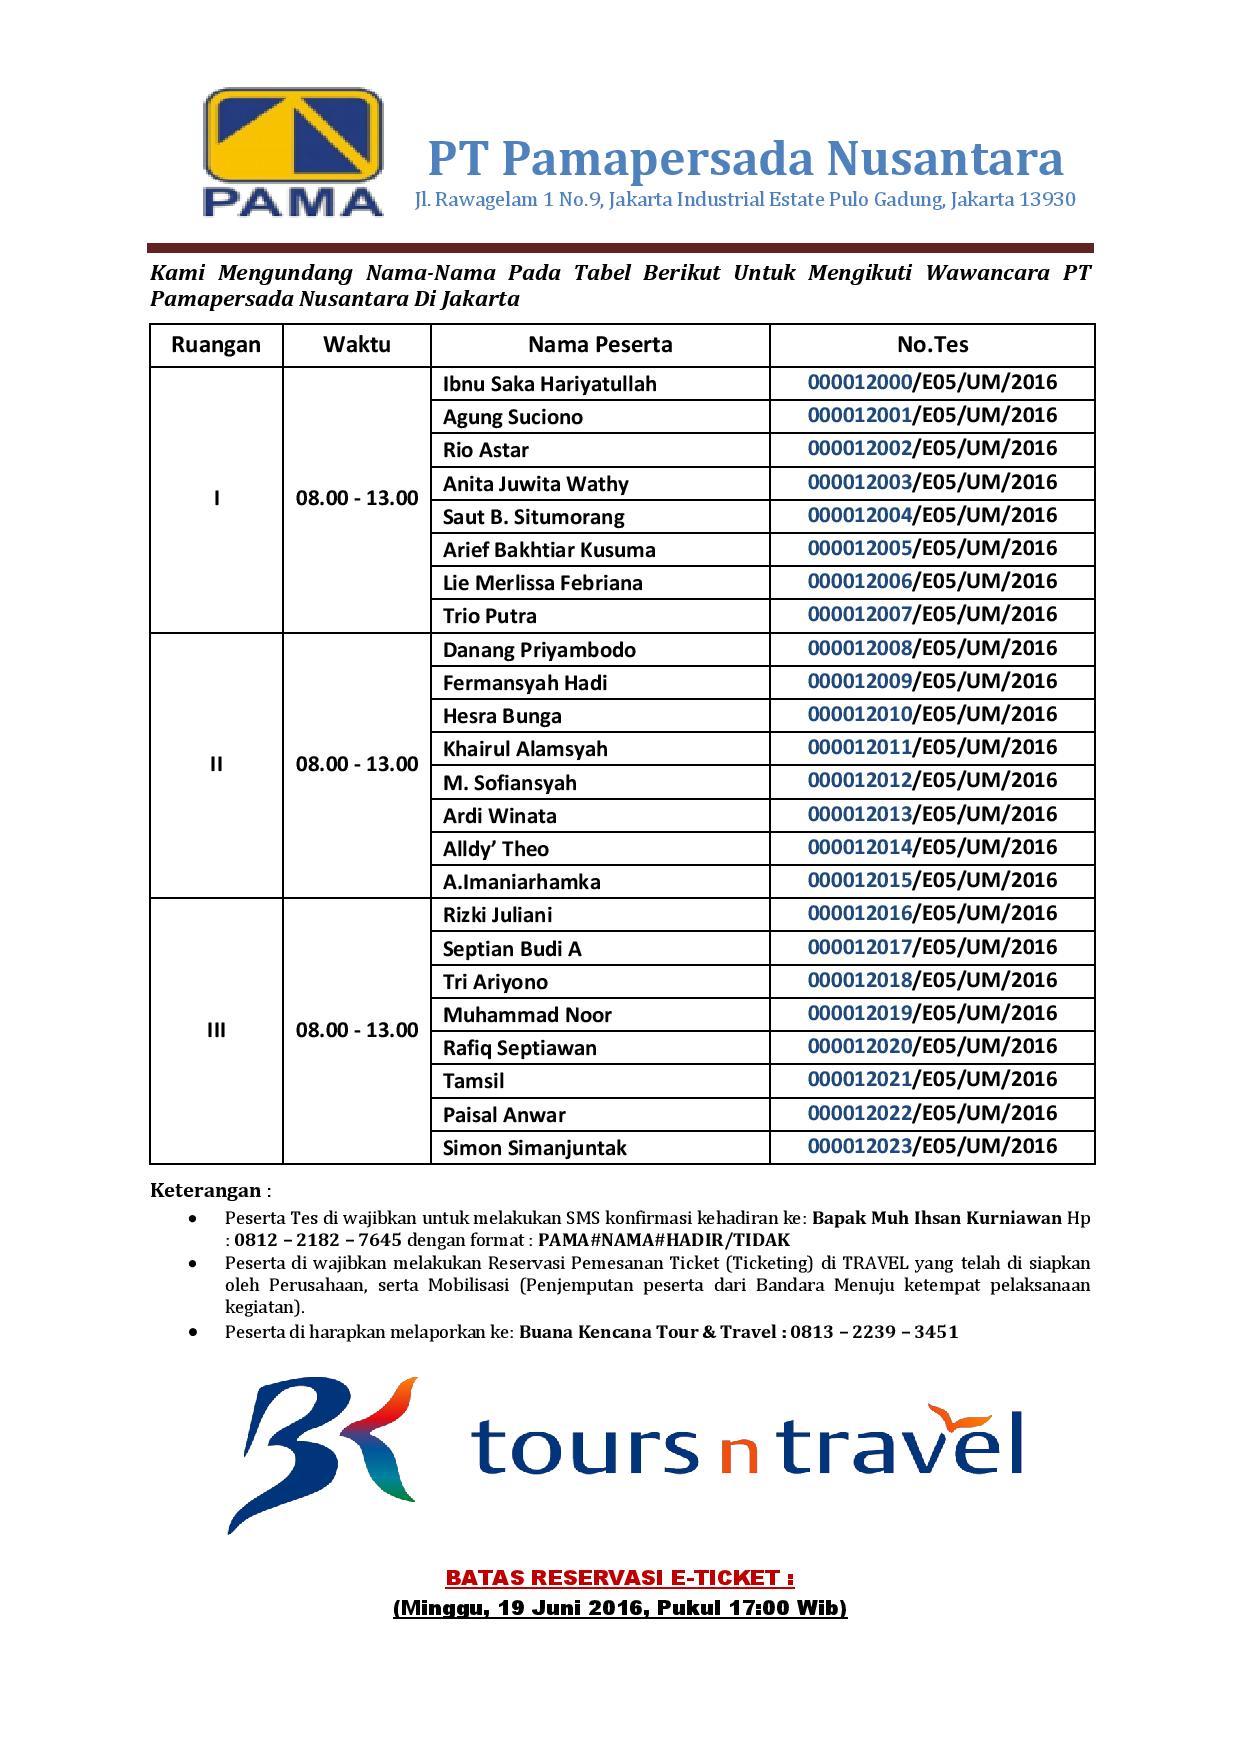 Tipu2cin Lowongan Kerja Palsu Penipuan Lowongan Kerja Pt Pama Persada Nusantara Bedir Tour And Travel Lowongan Kerja